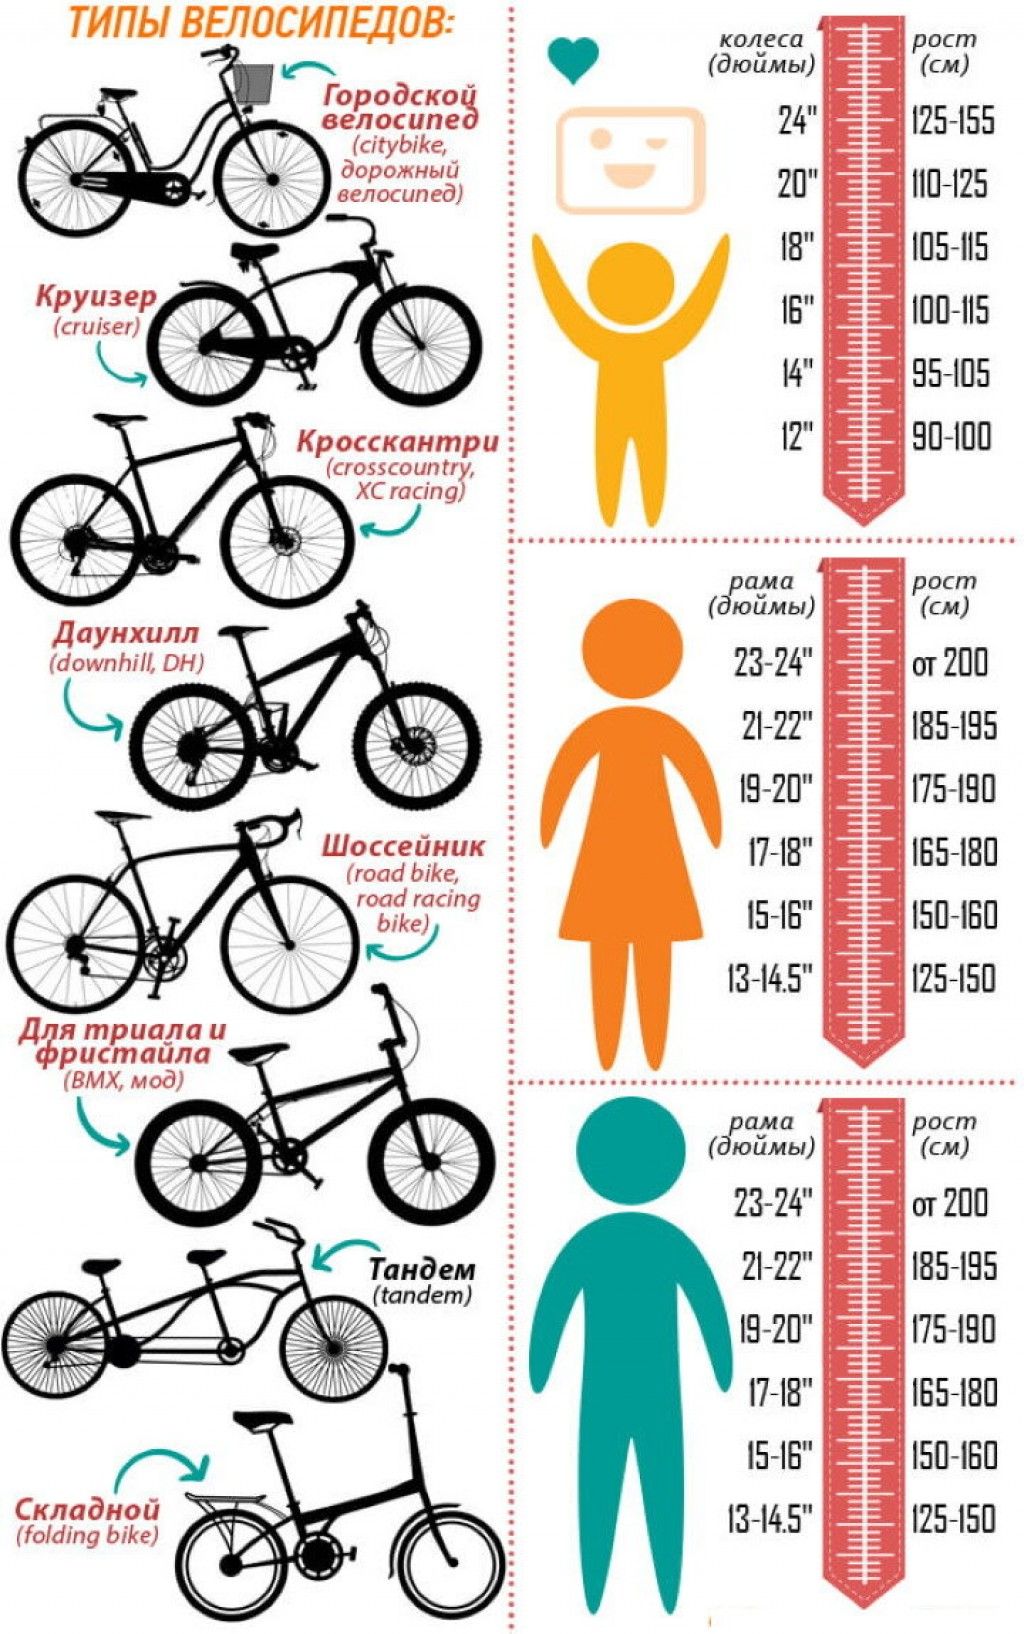 Рост м велосипед. Как подобрать размер рамы велосипеда по росту ребенка. Как выбрать размер рамы велосипеда по росту ребенка. Размер рамы и колес велосипеда по росту таблица для детей. Размер рамы у велосипеда с 26 колесами.